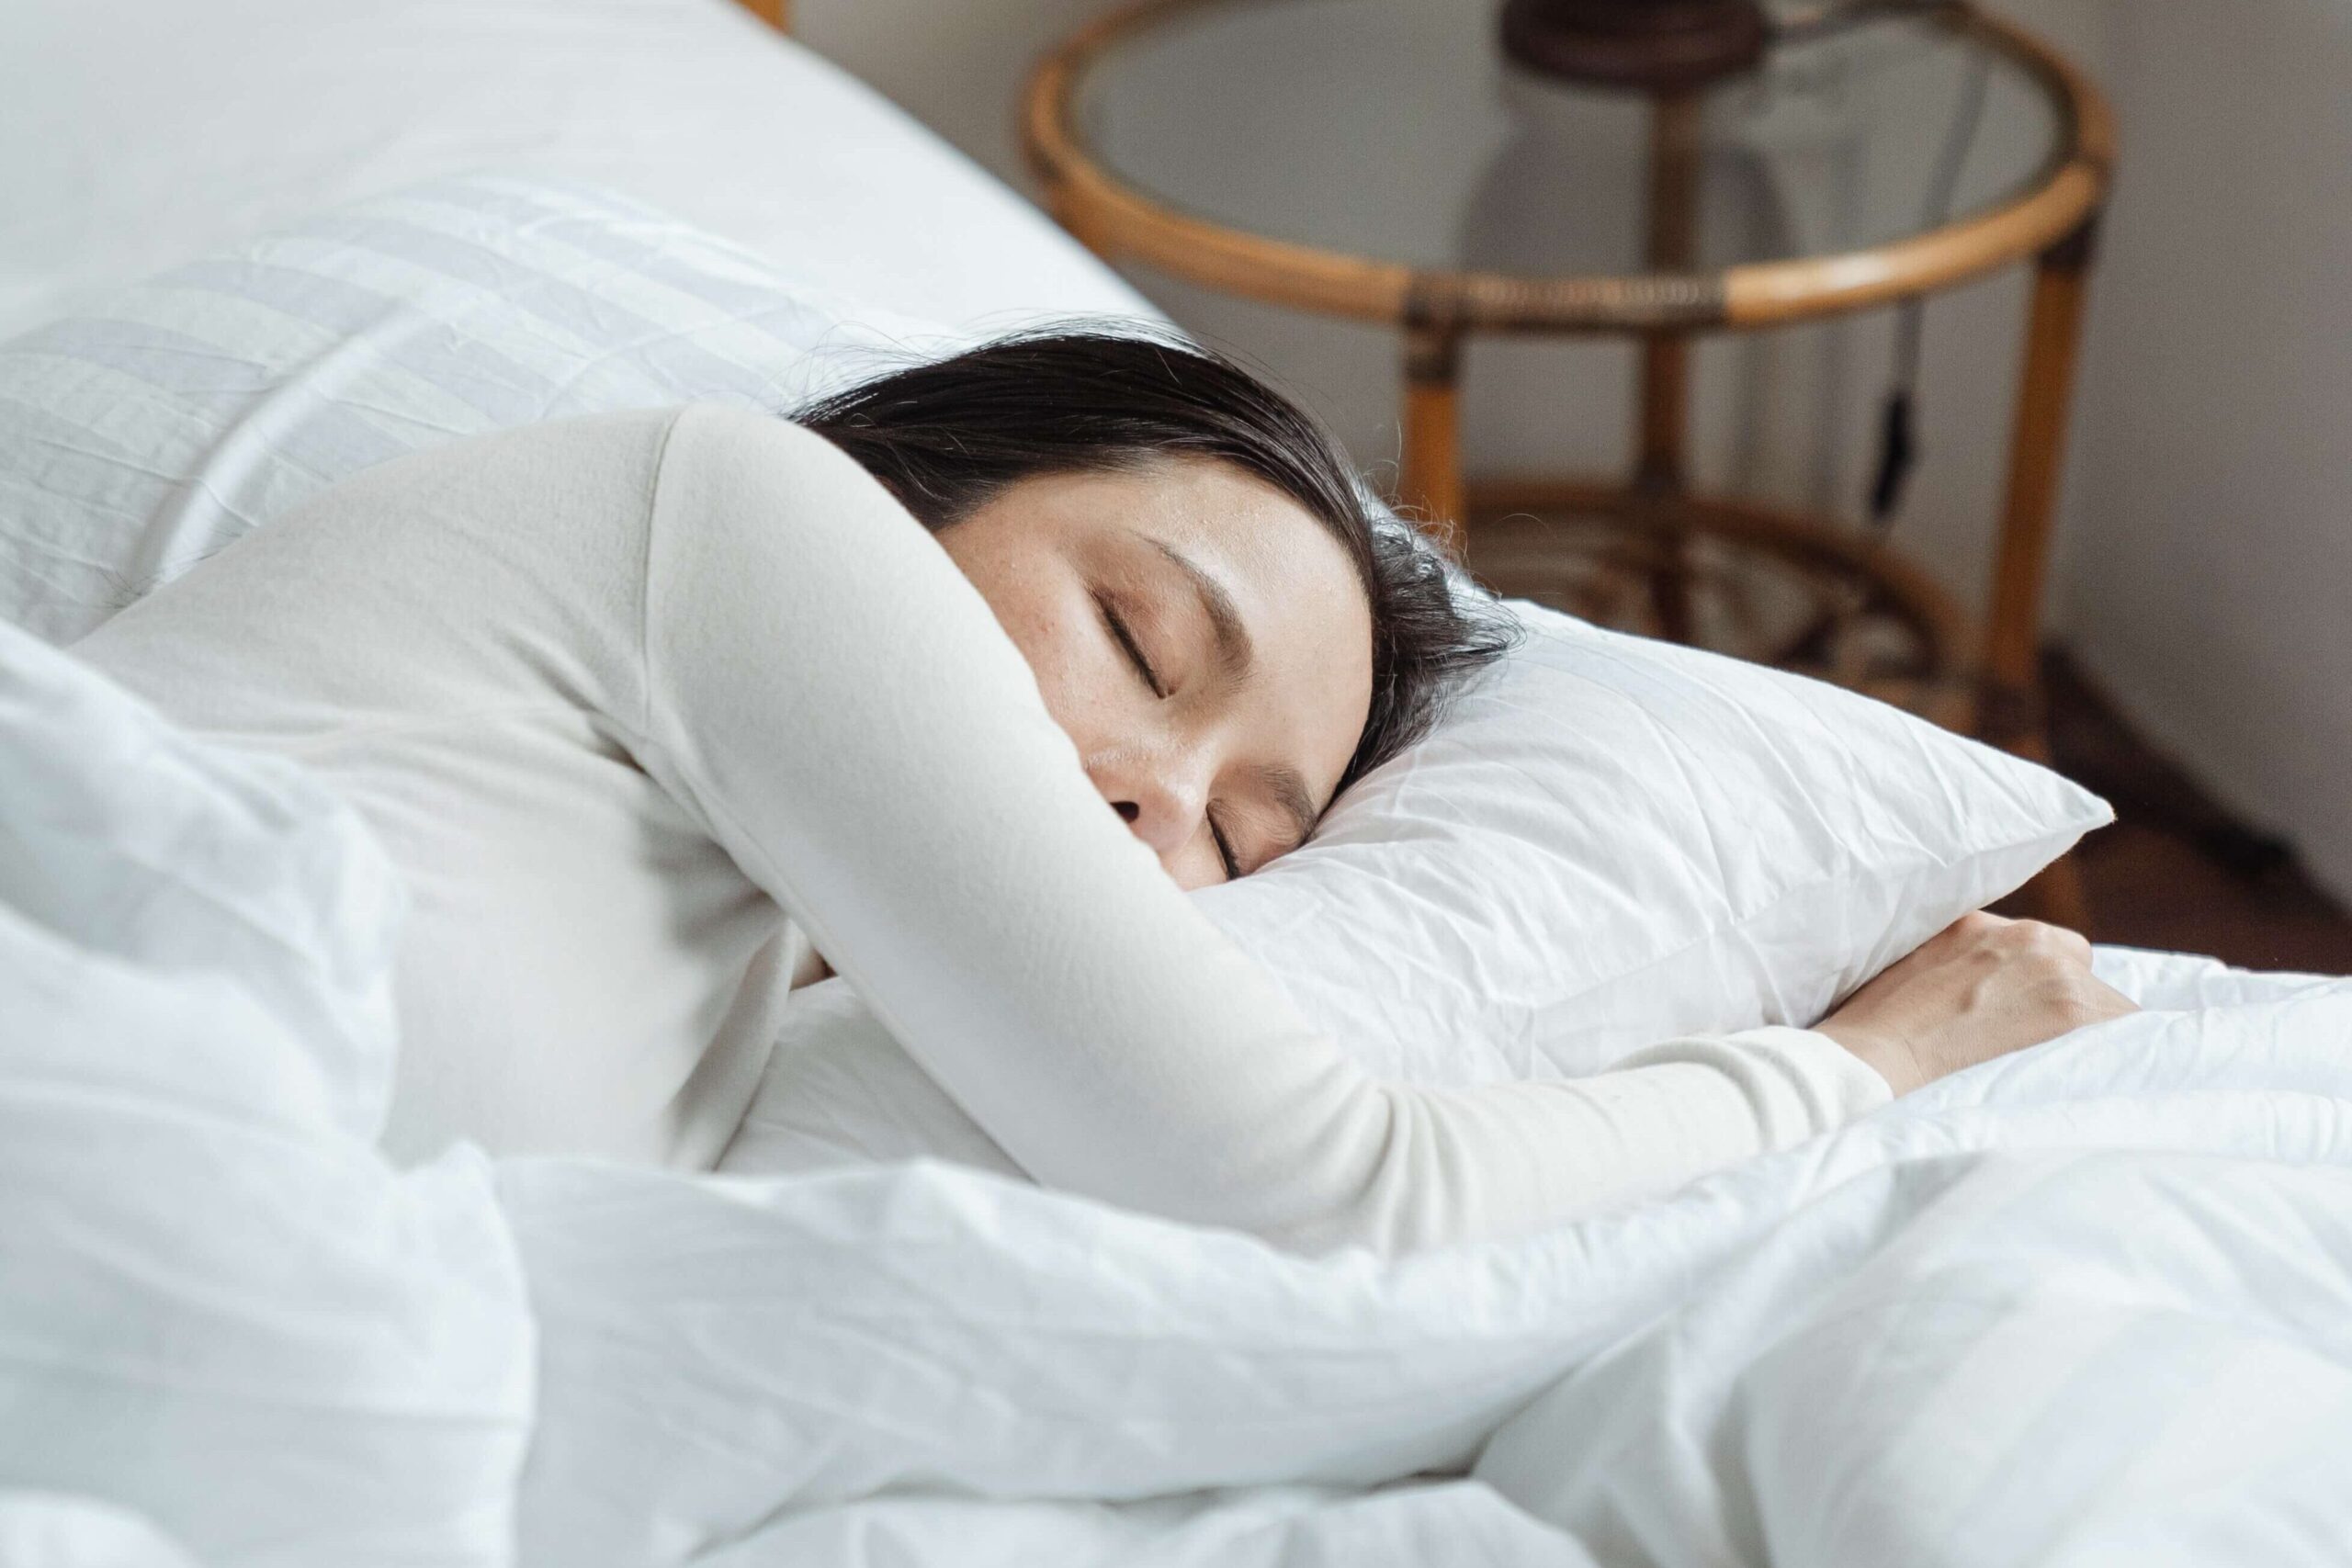 Improve health through good sleep